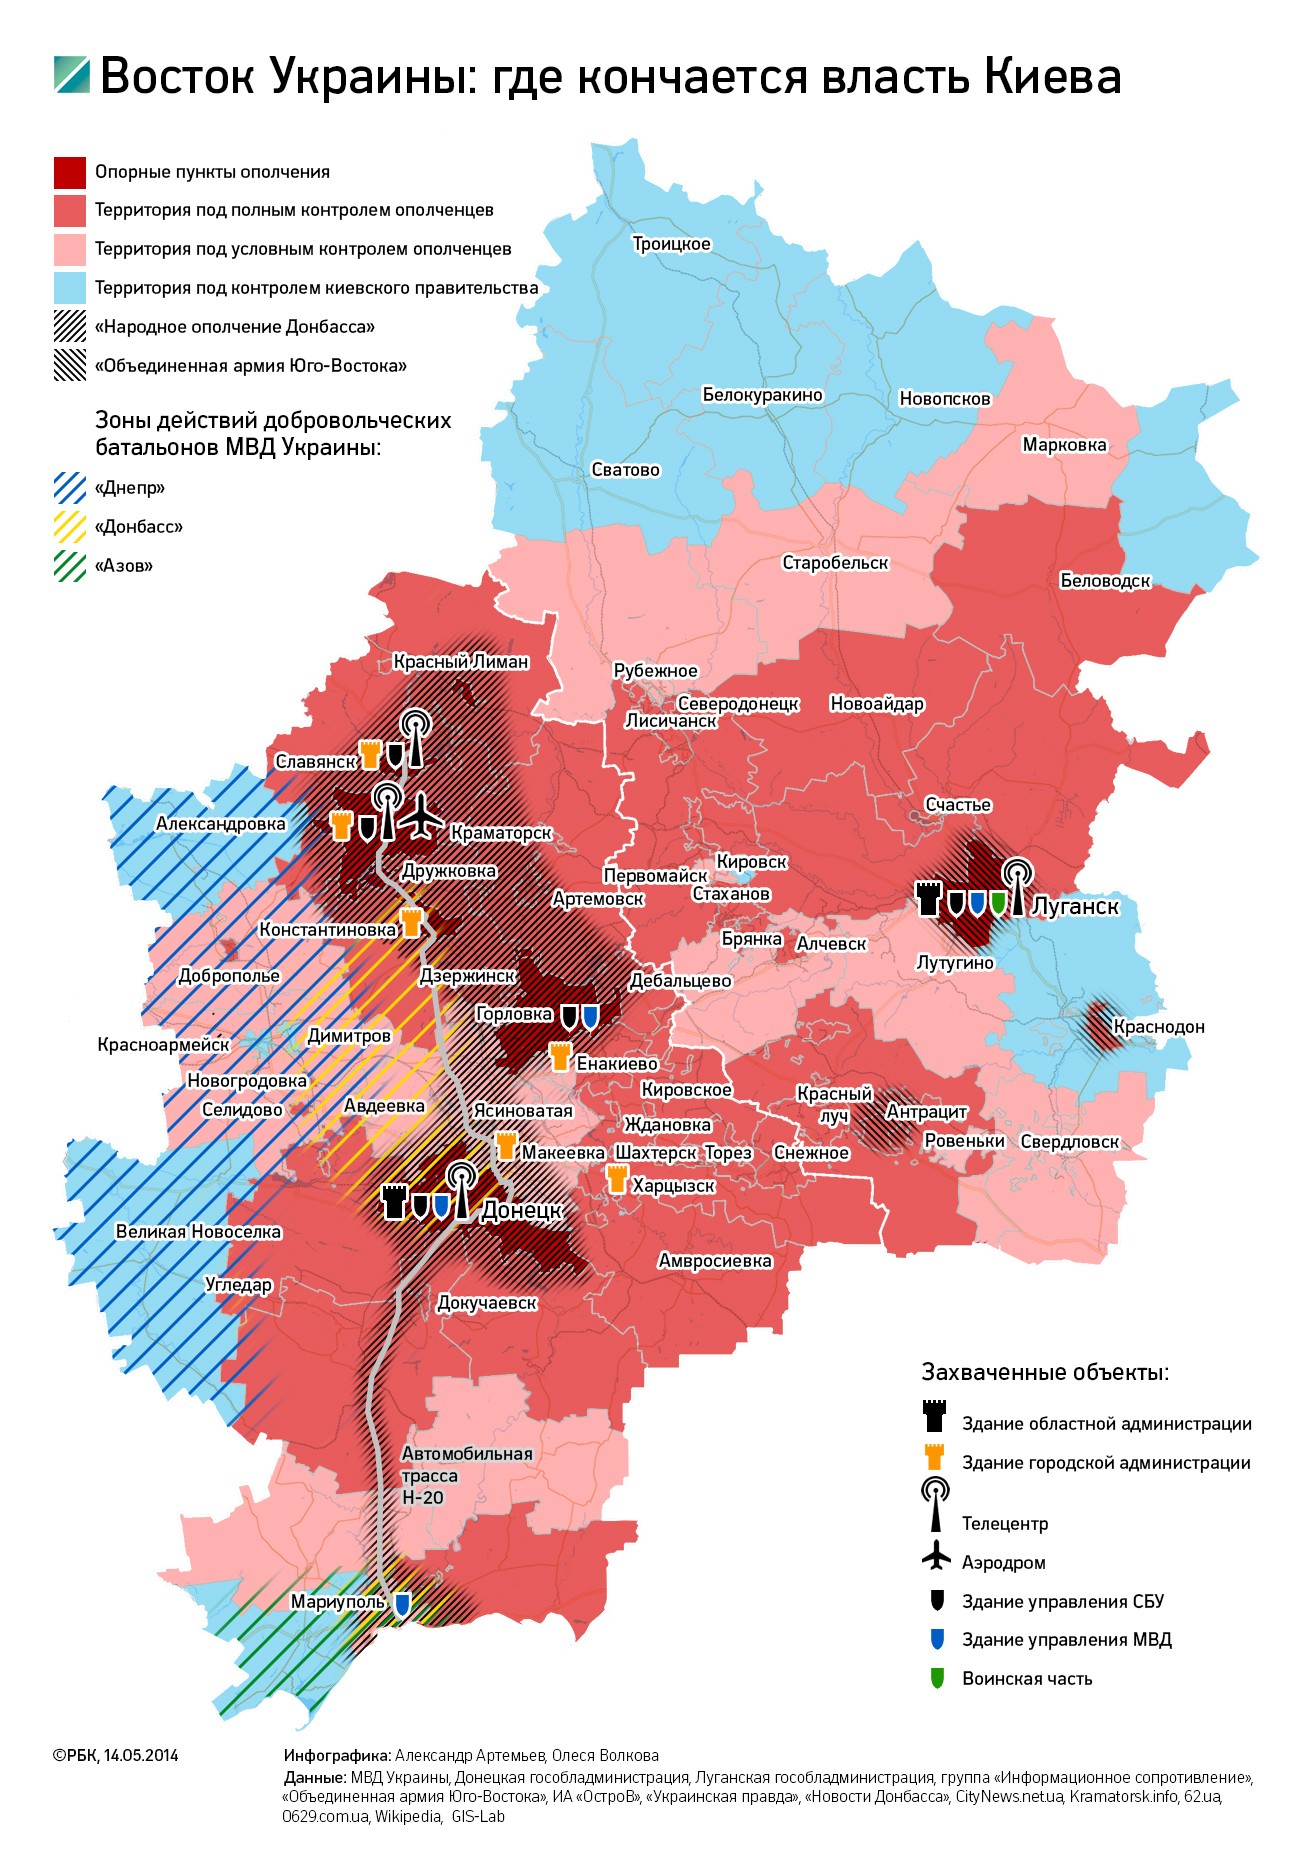 Двоевластие в двух областях: что контролируют ополченцы на Украине